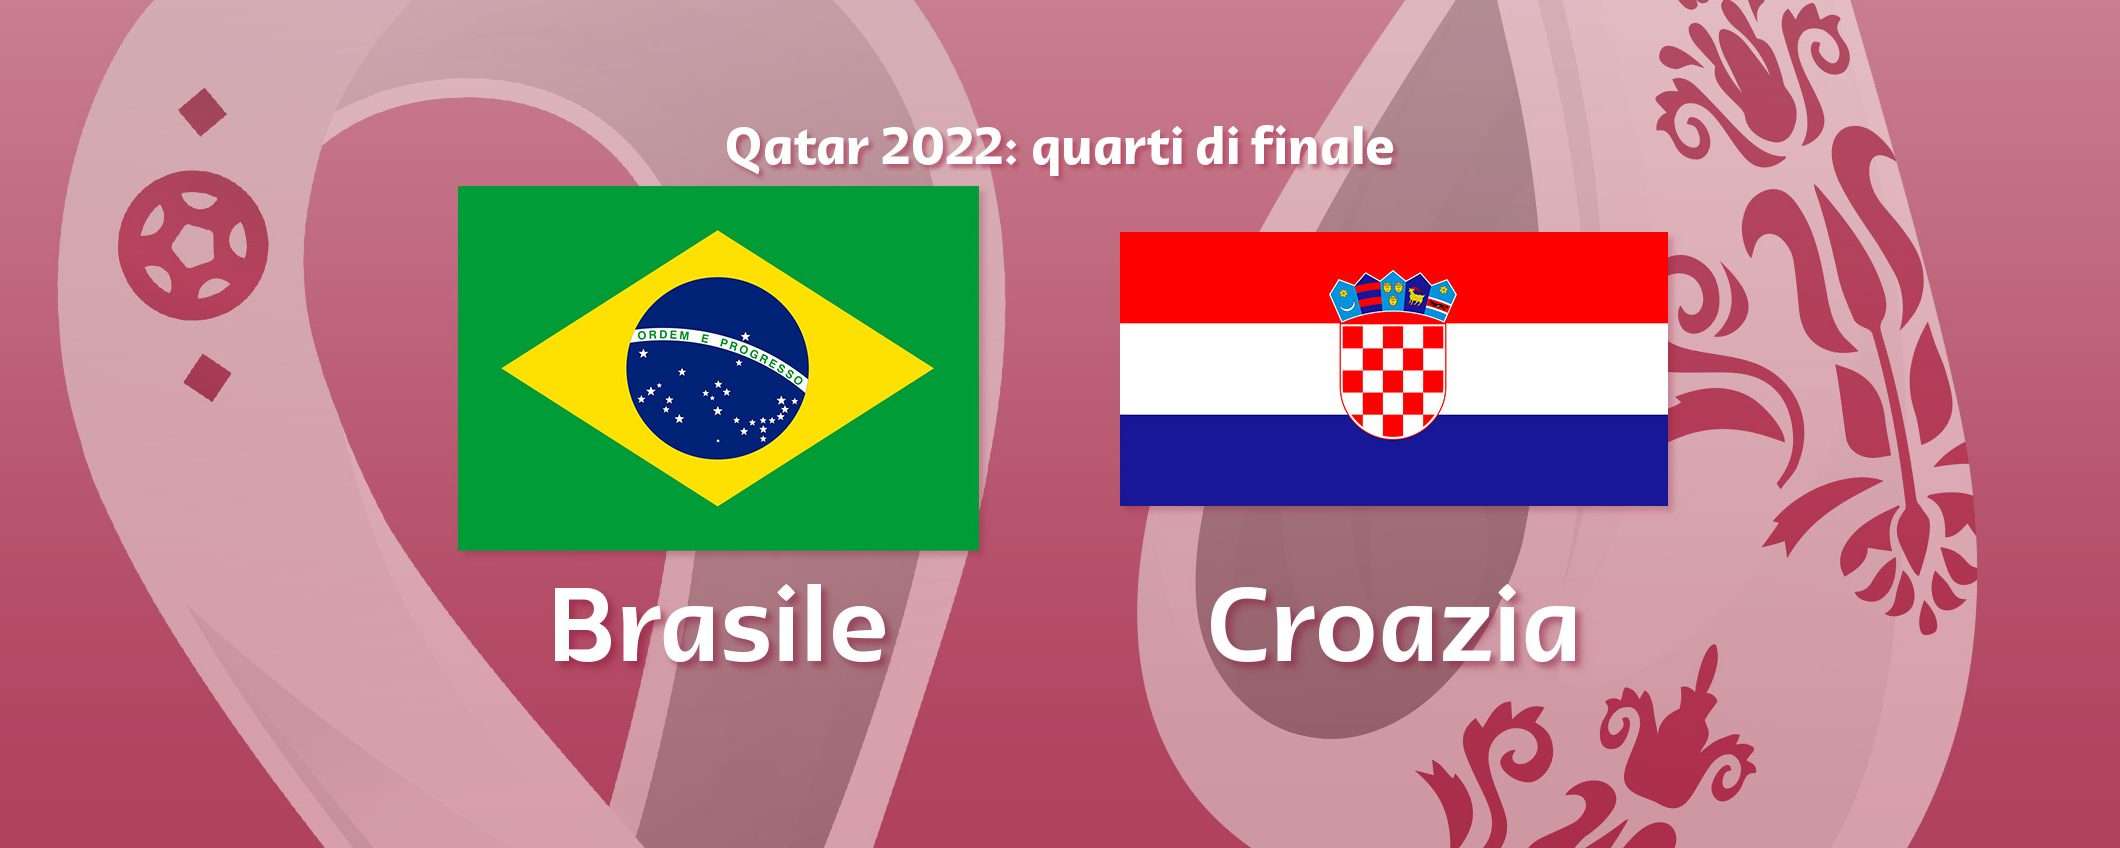 Come vedere Brasile-Croazia in streaming